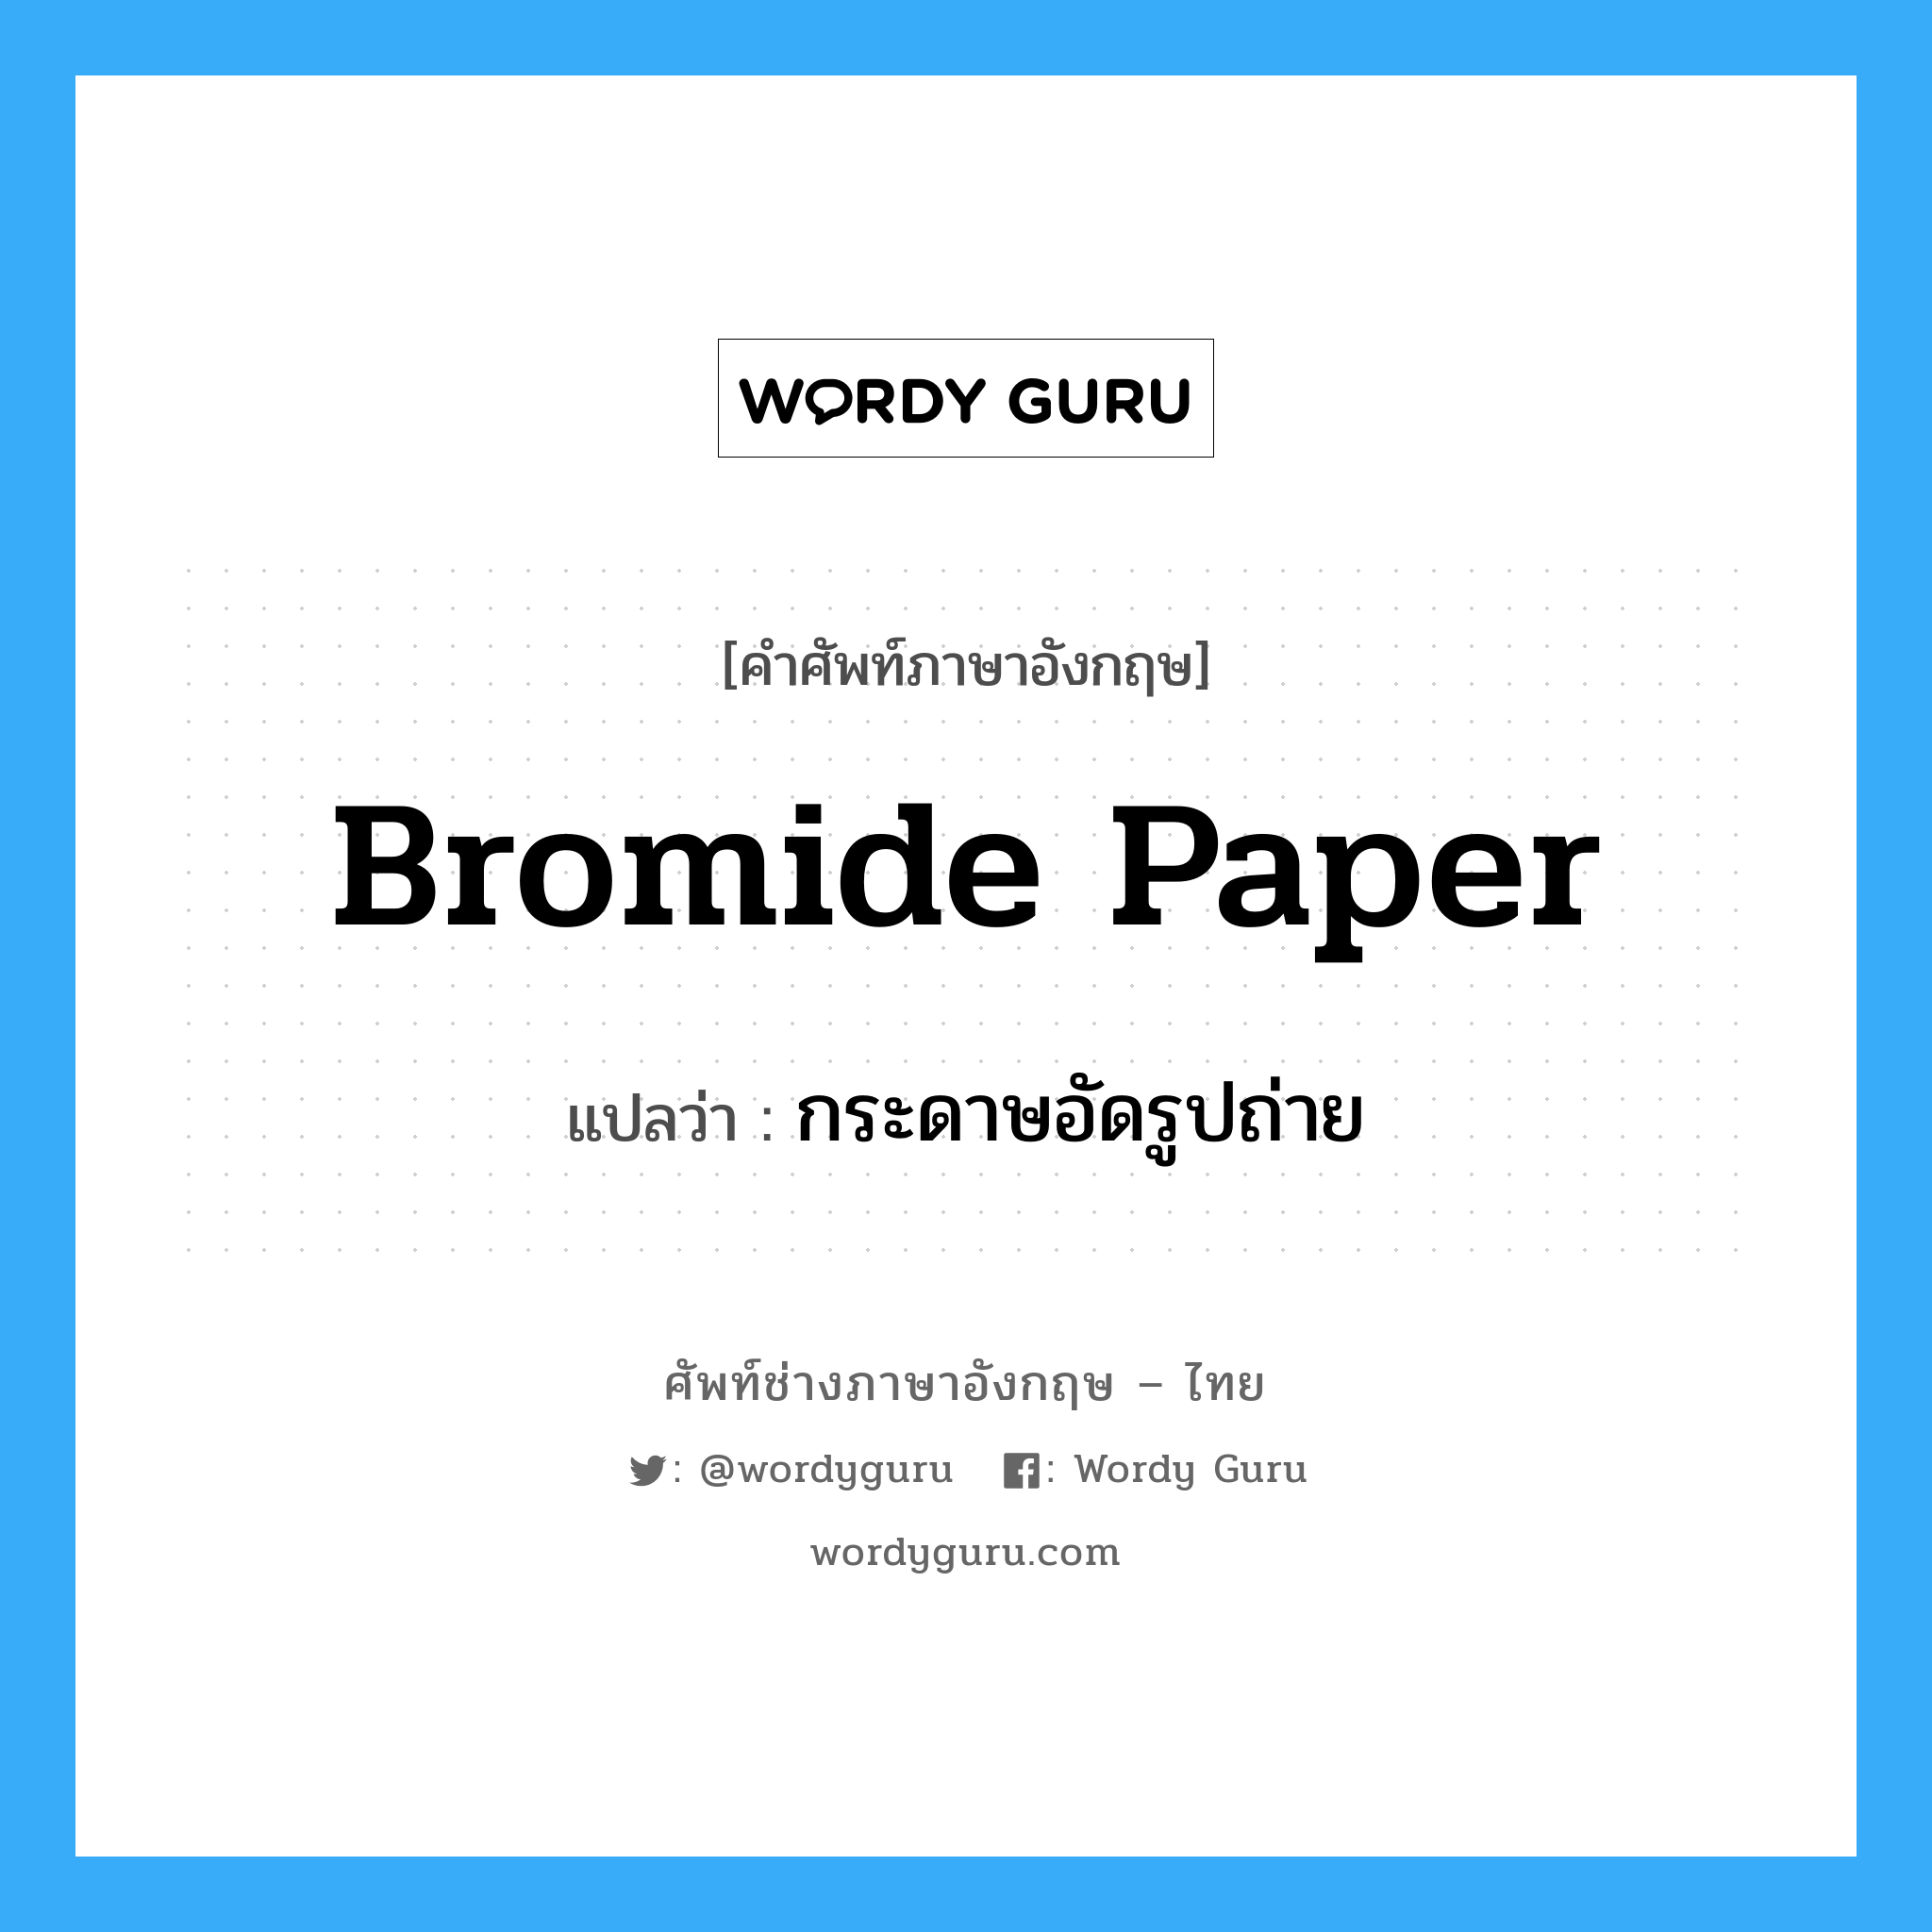 bromide paper แปลว่า?, คำศัพท์ช่างภาษาอังกฤษ - ไทย bromide paper คำศัพท์ภาษาอังกฤษ bromide paper แปลว่า กระดาษอัดรูปถ่าย